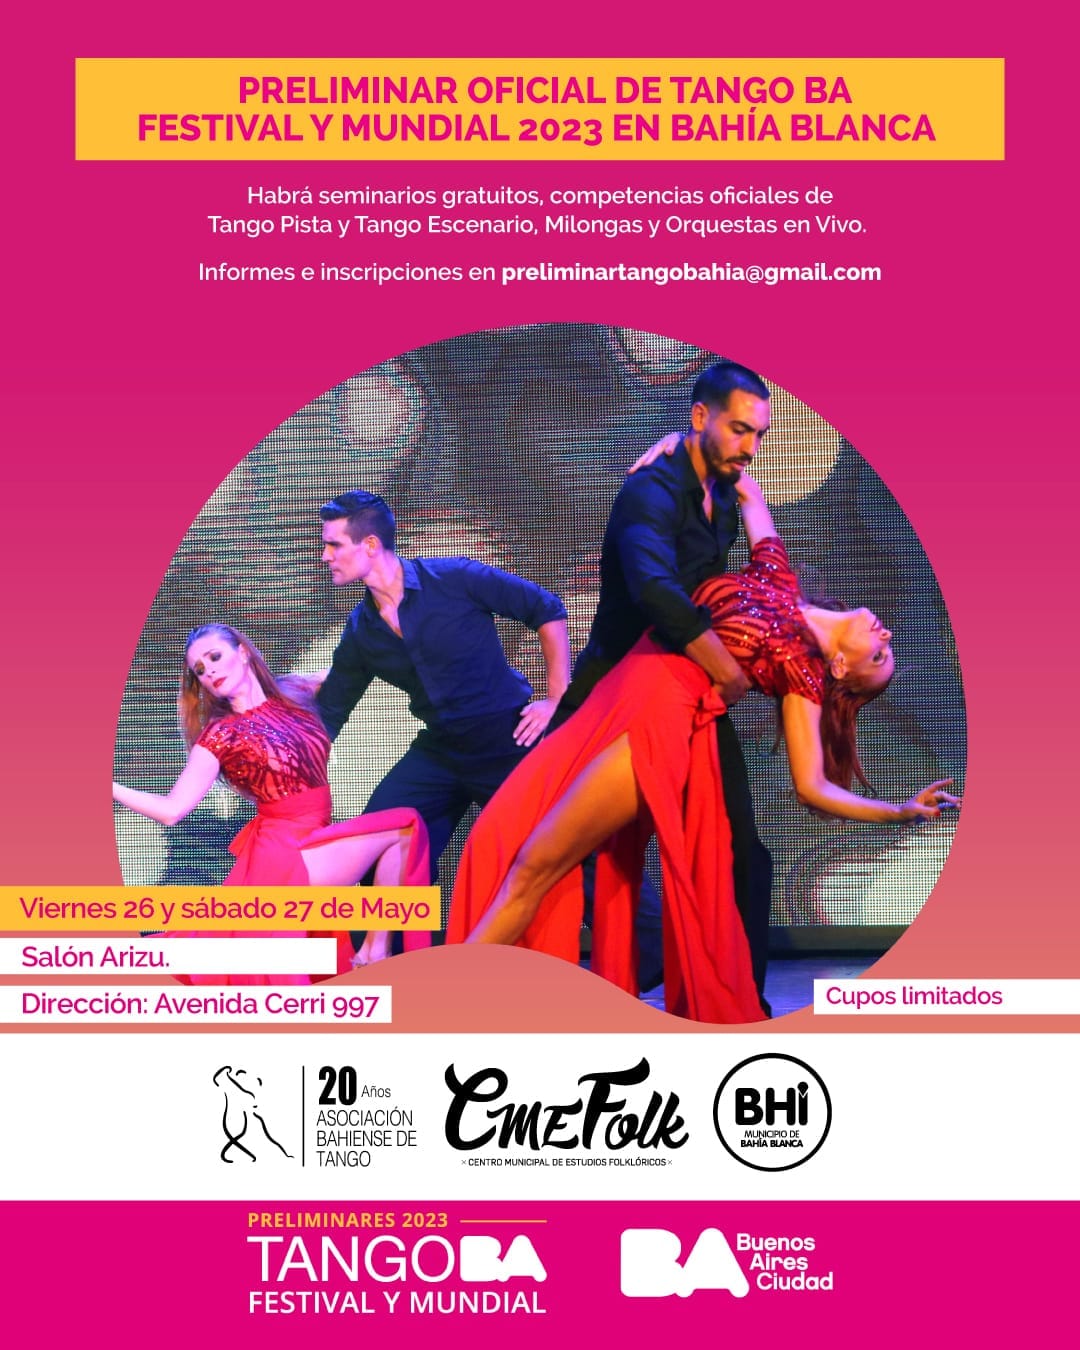 Tango BA Festival y Mundial 2023 en la ciudad Prensa Bahía